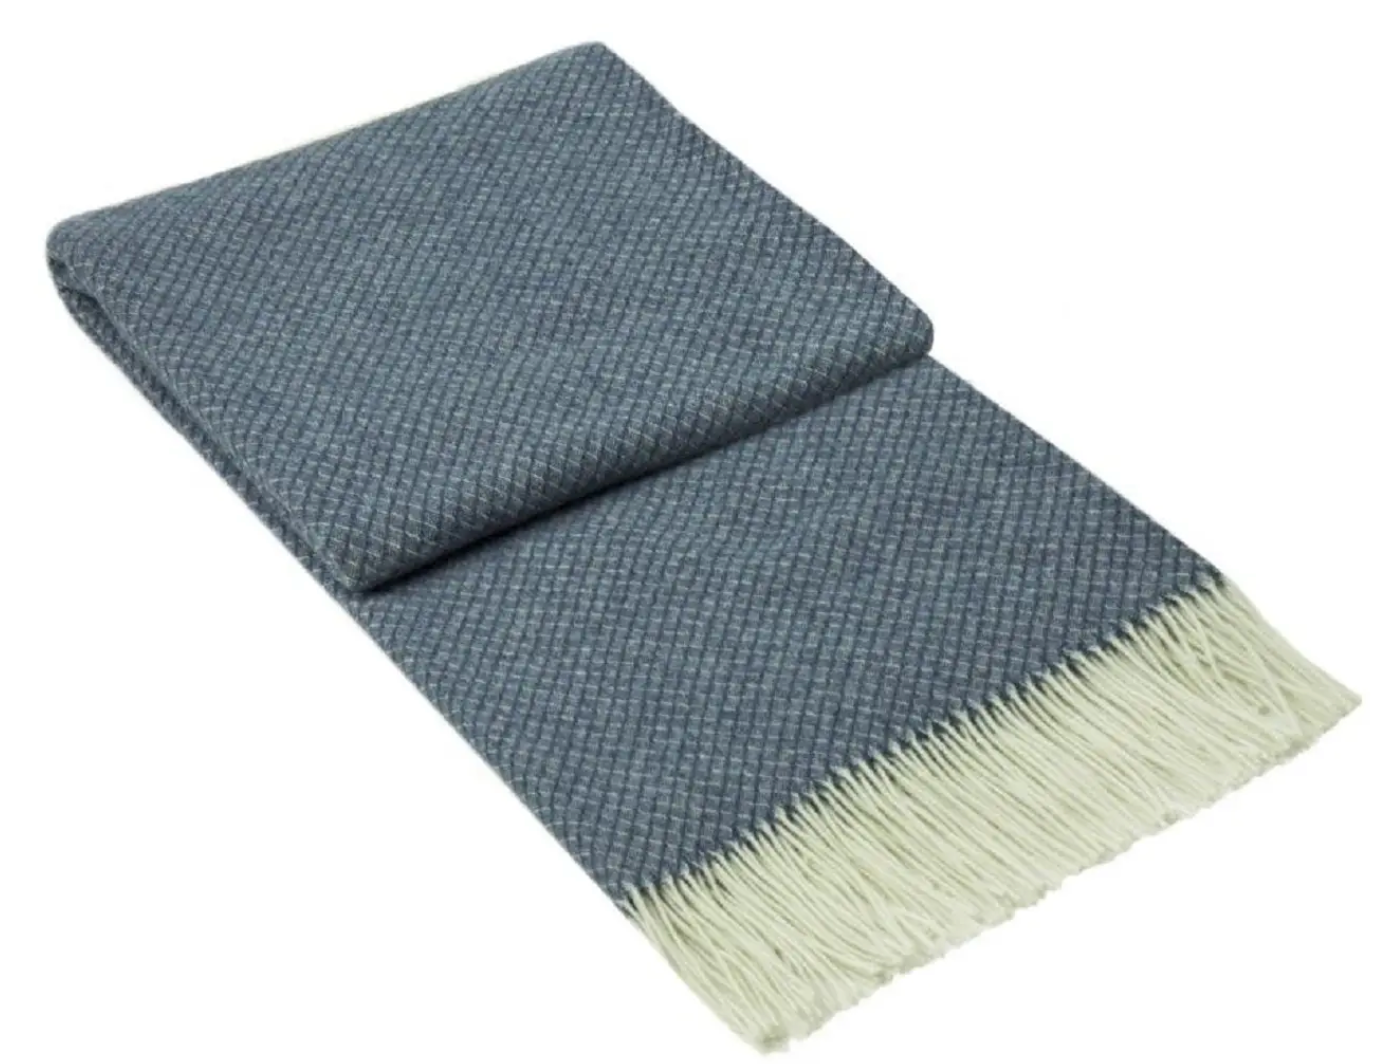 Chiswick Merino/Wool Blend Throw - Navy Blue